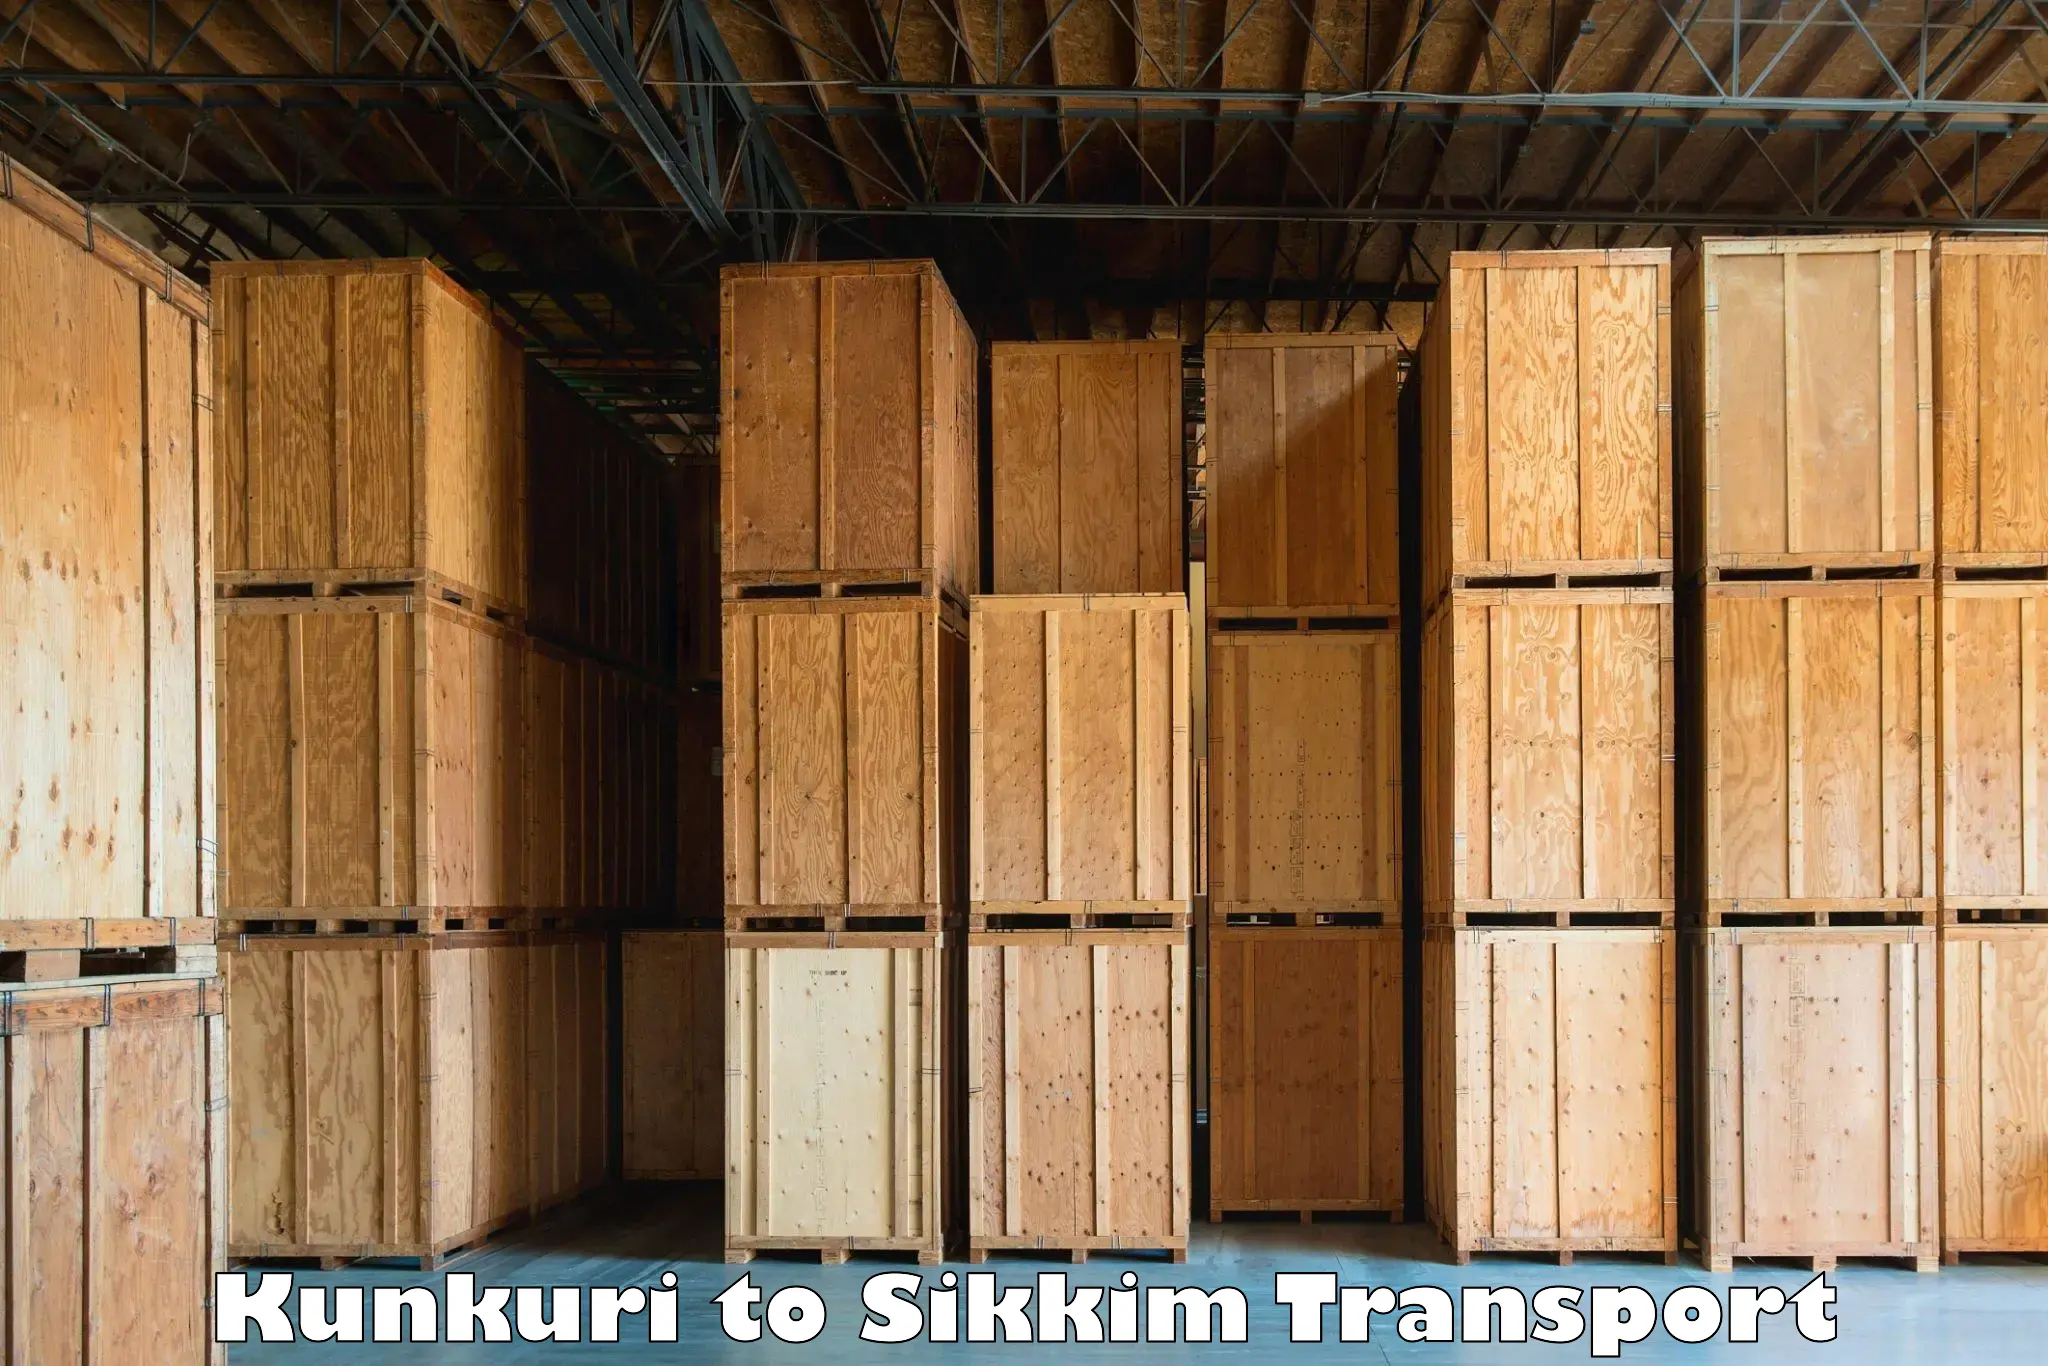 Pick up transport service Kunkuri to South Sikkim